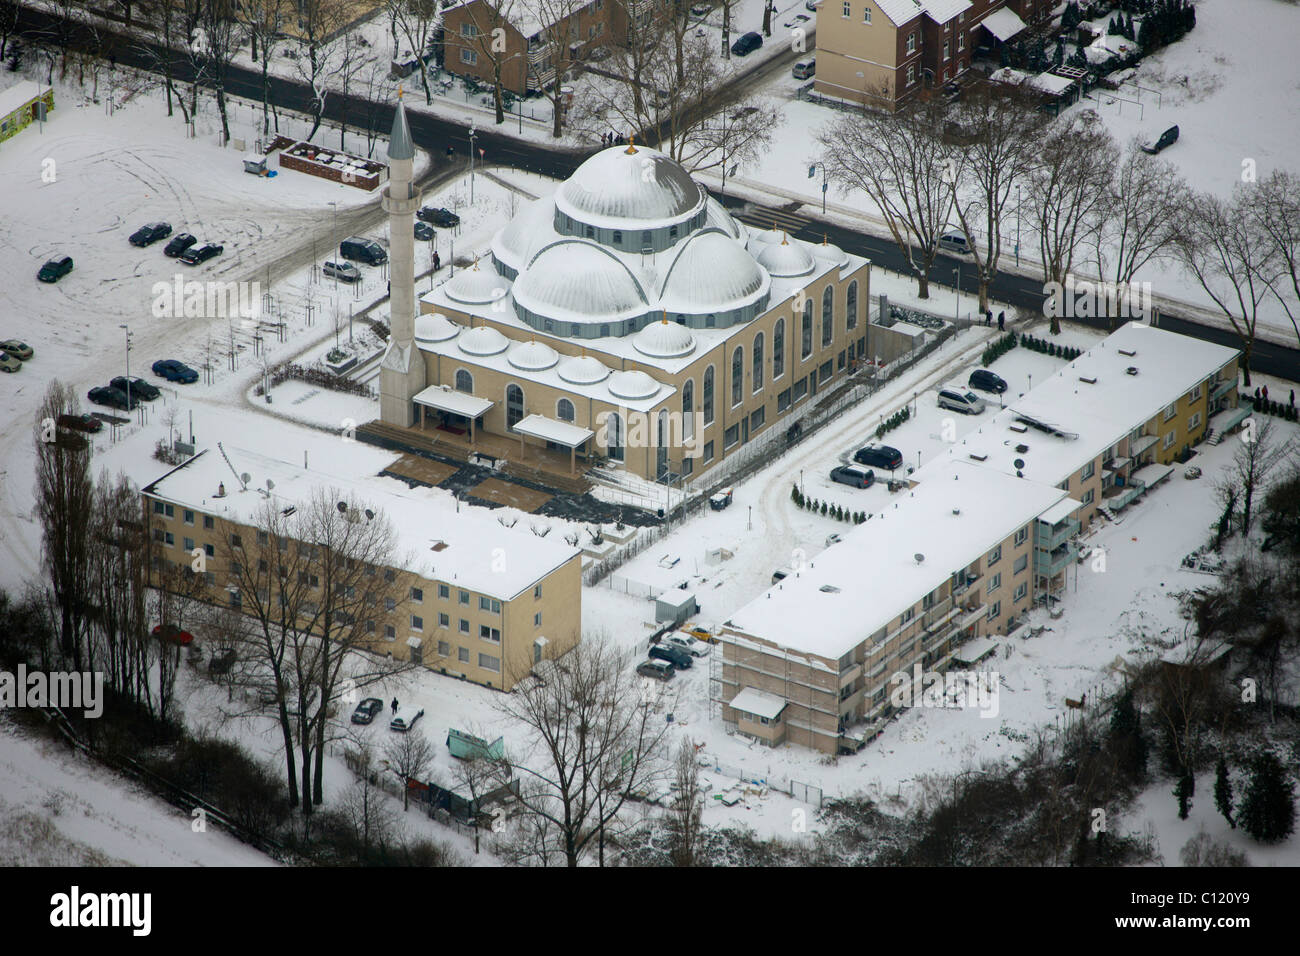 Foto aerea, DITIB Moschea Merkez Hamborn, neve, Duisburg, Ruhr, Renania settentrionale-Vestfalia, Germania, Europa Foto Stock